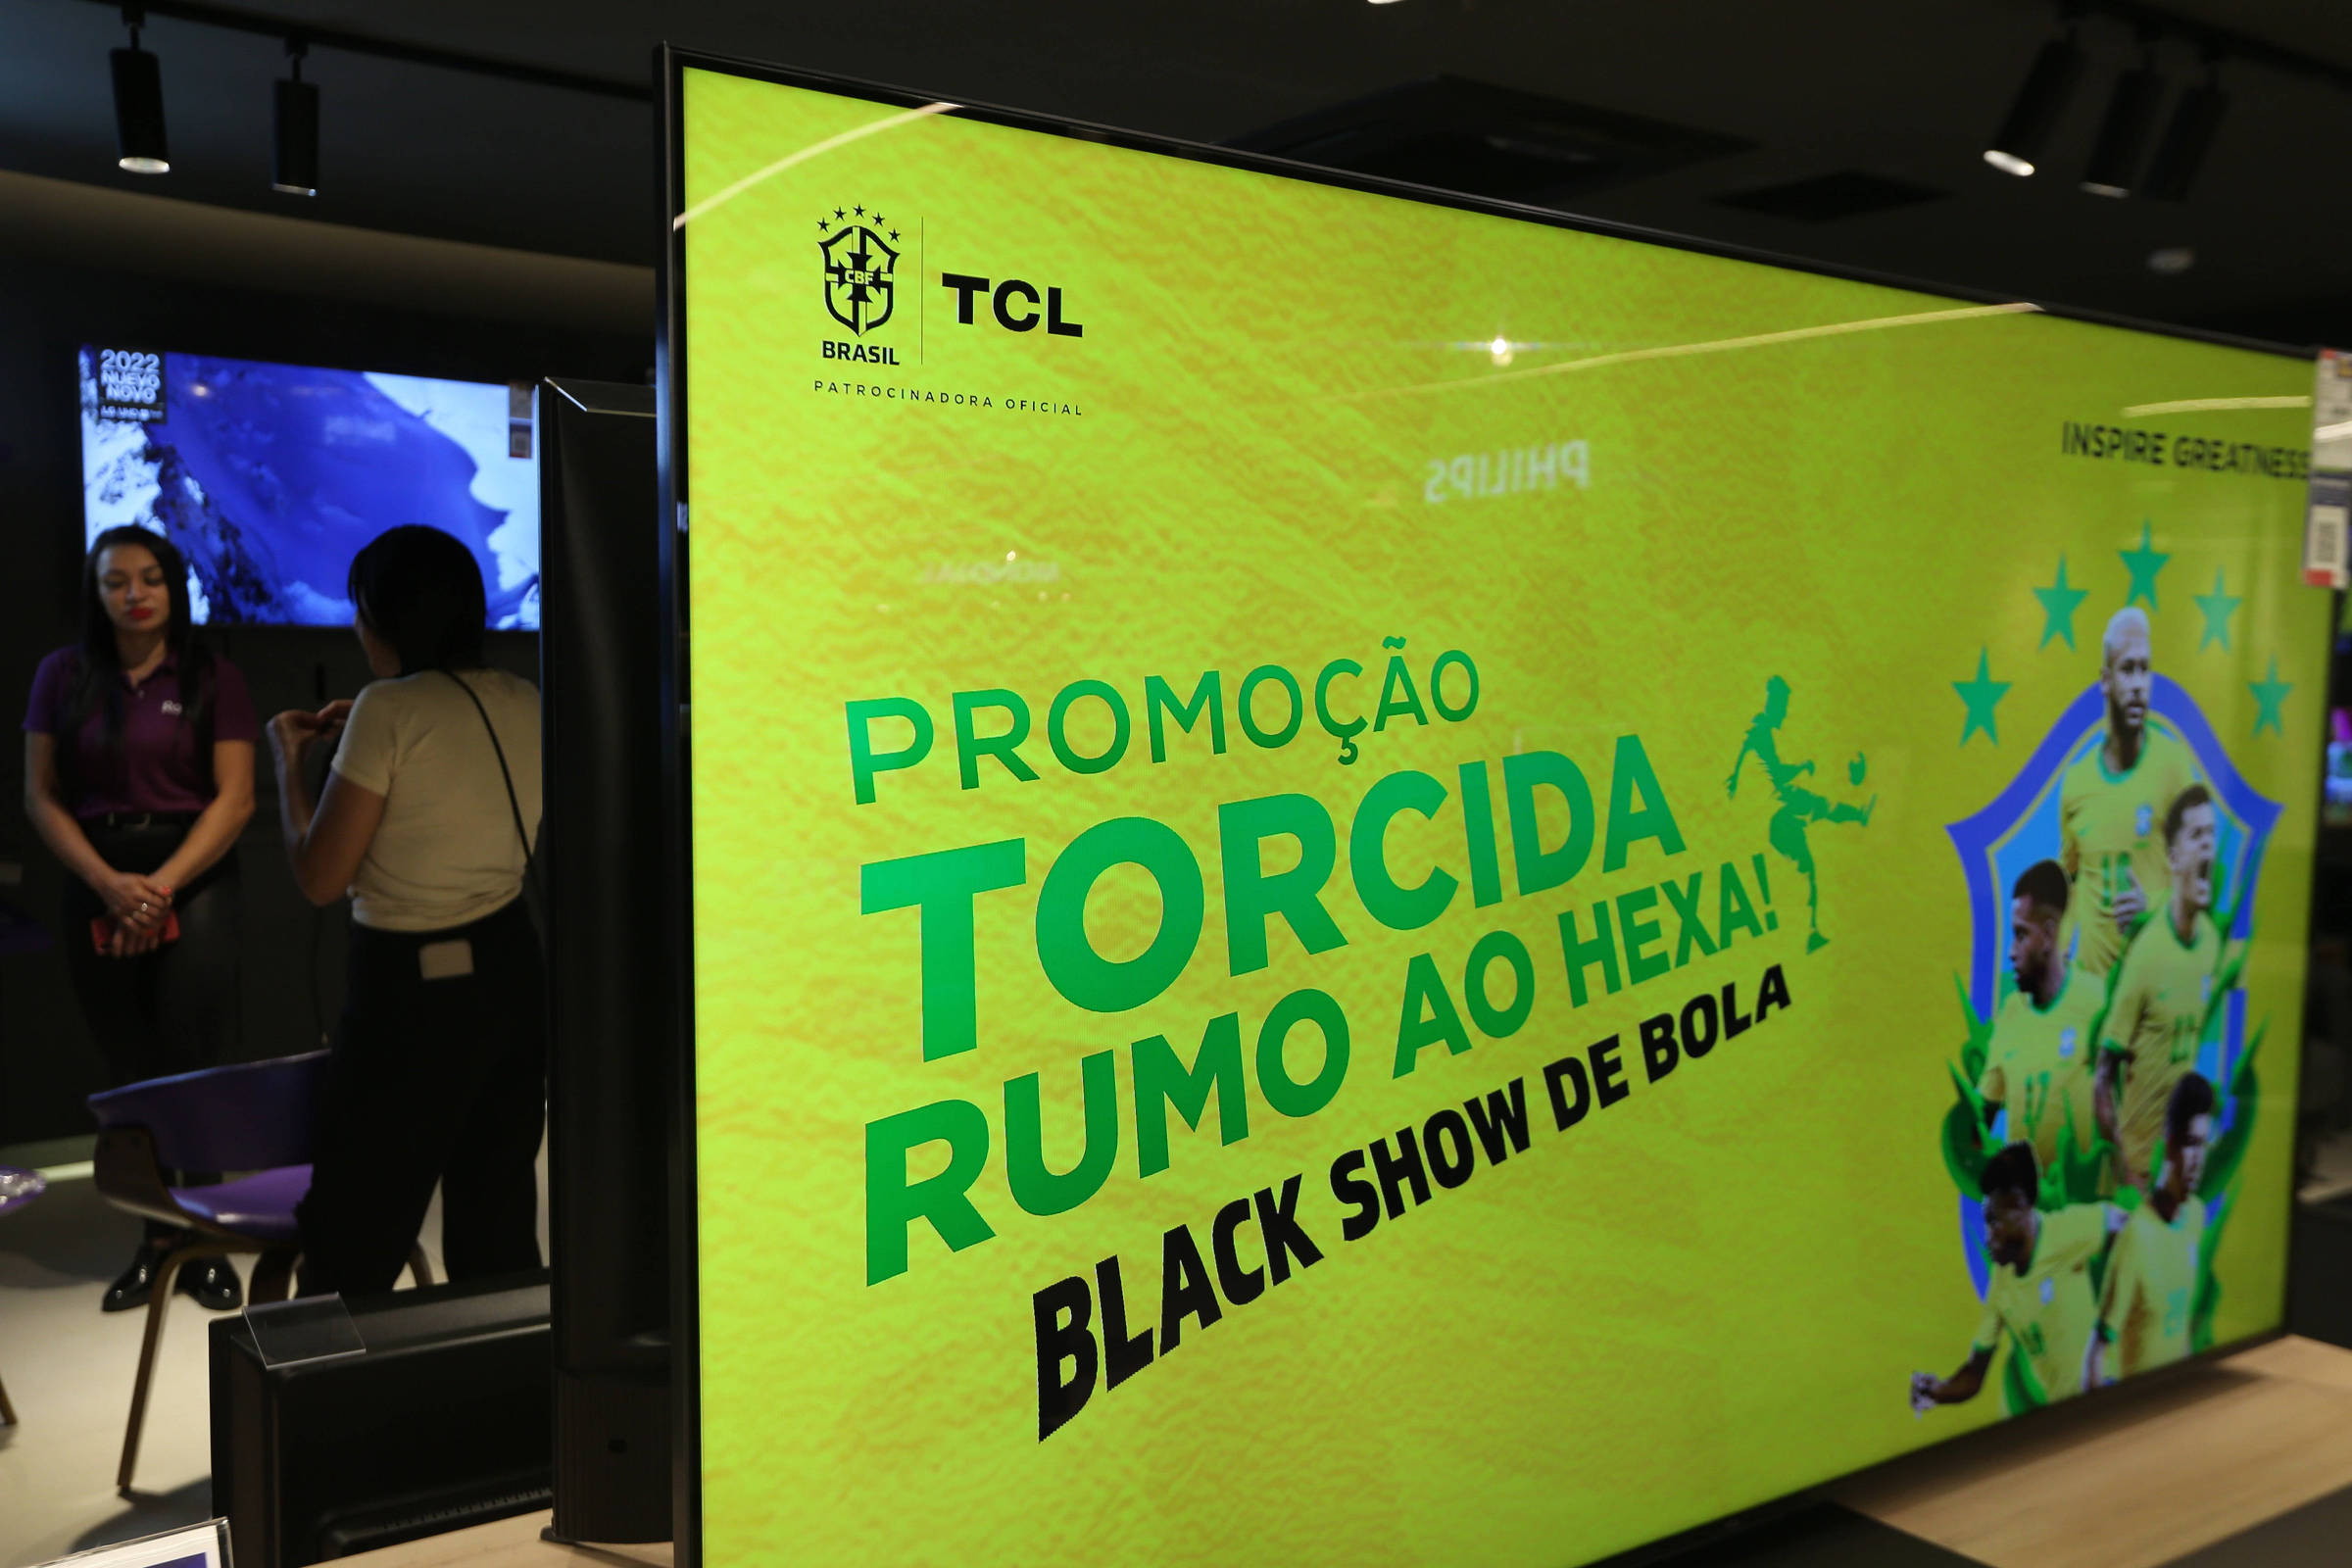 Black Friday brasileira começa amanhã e Roku chega ao Brasil por R$ 349 -  Hoje no TecMundo 